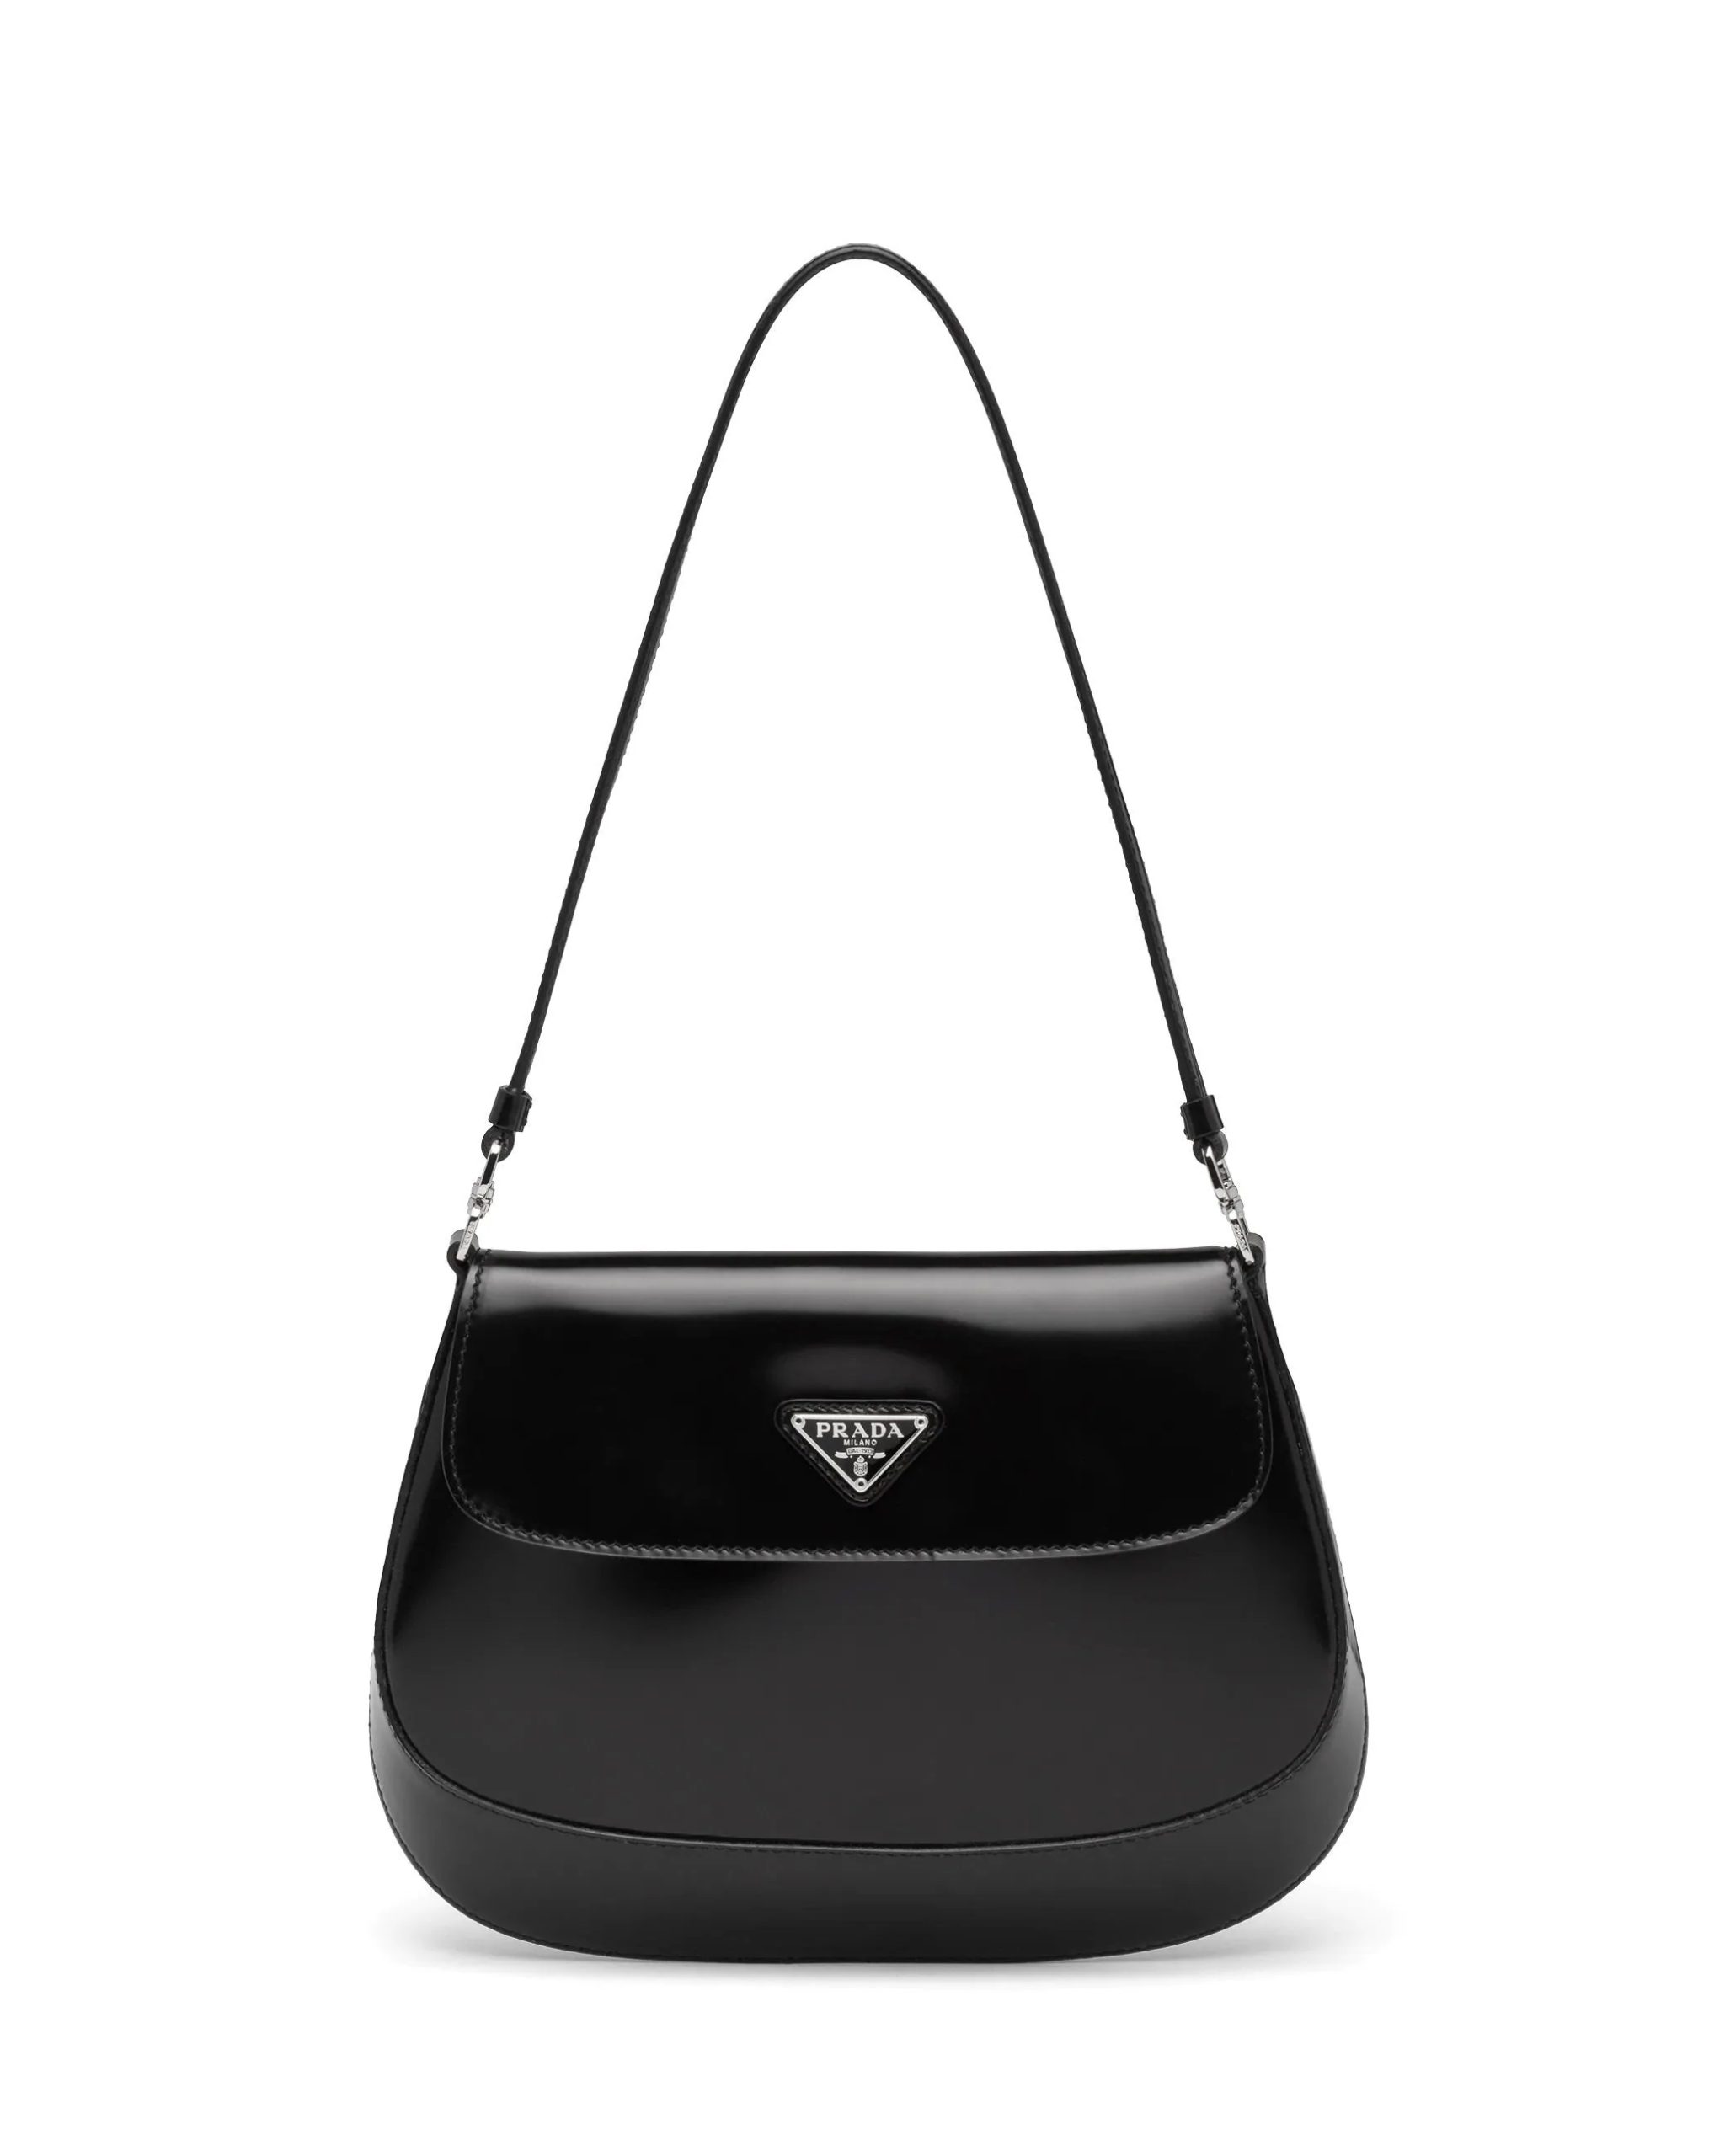 Prada Cleo Brushed Leather Shoulder Bag With Flap, Black